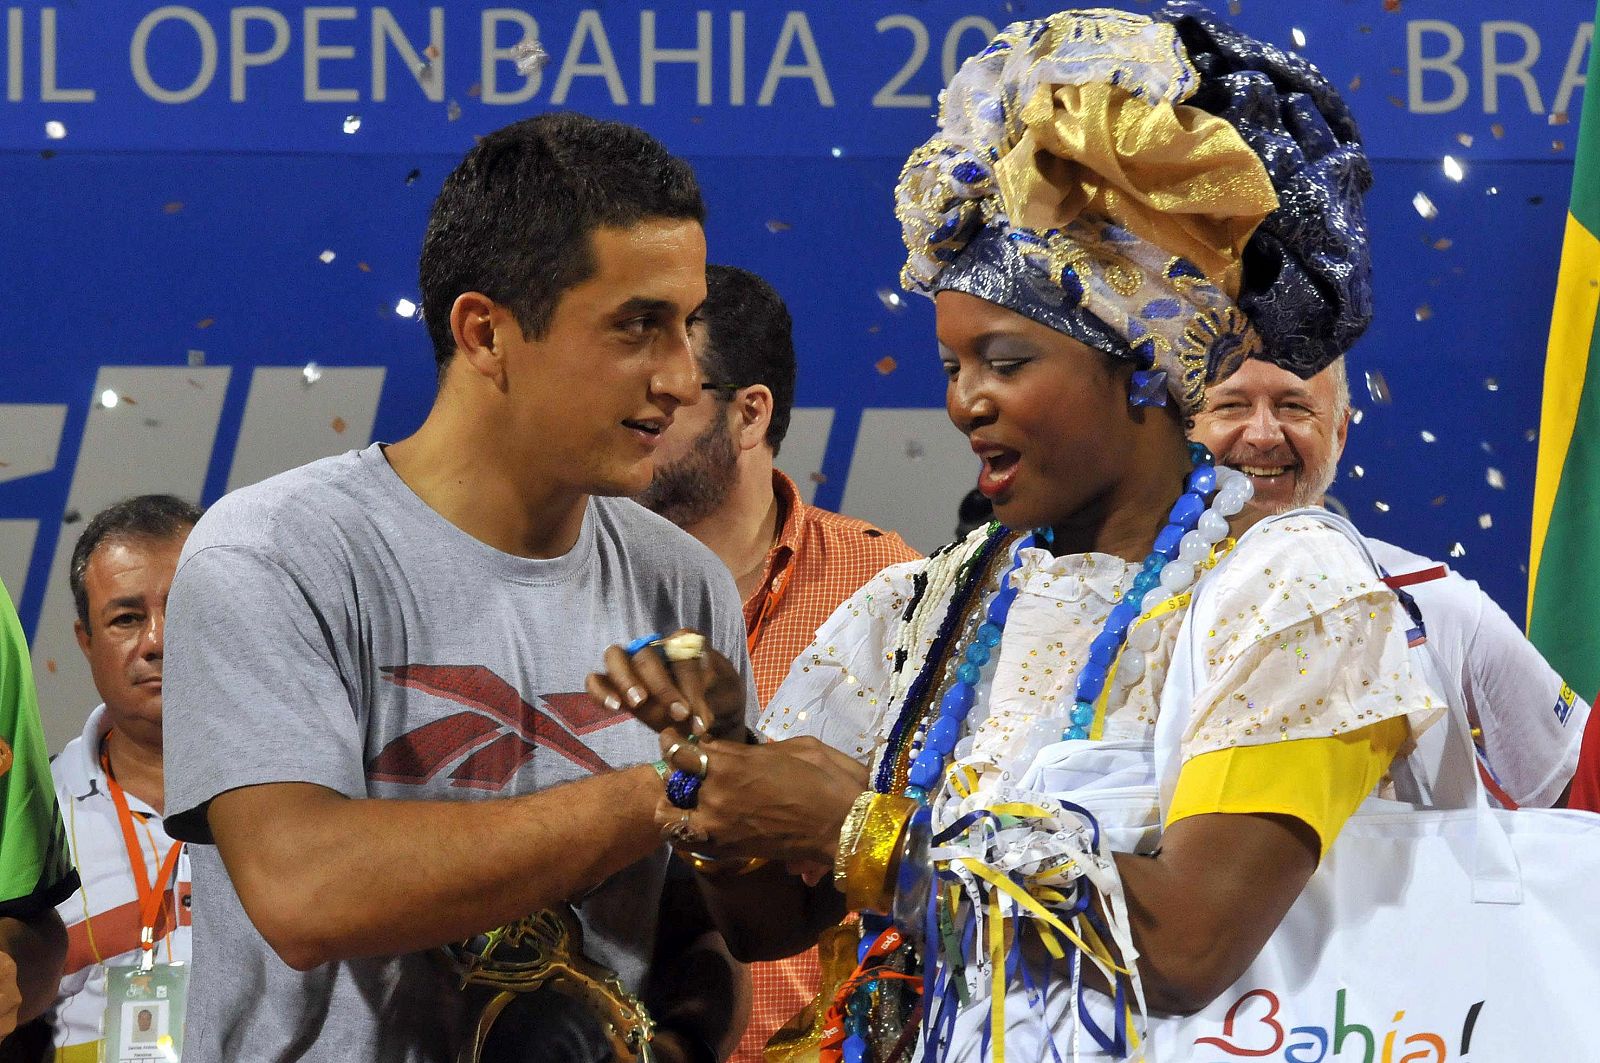 El español Nicolás Almagro celebra su victoria en la final del Abierto de Brasil.